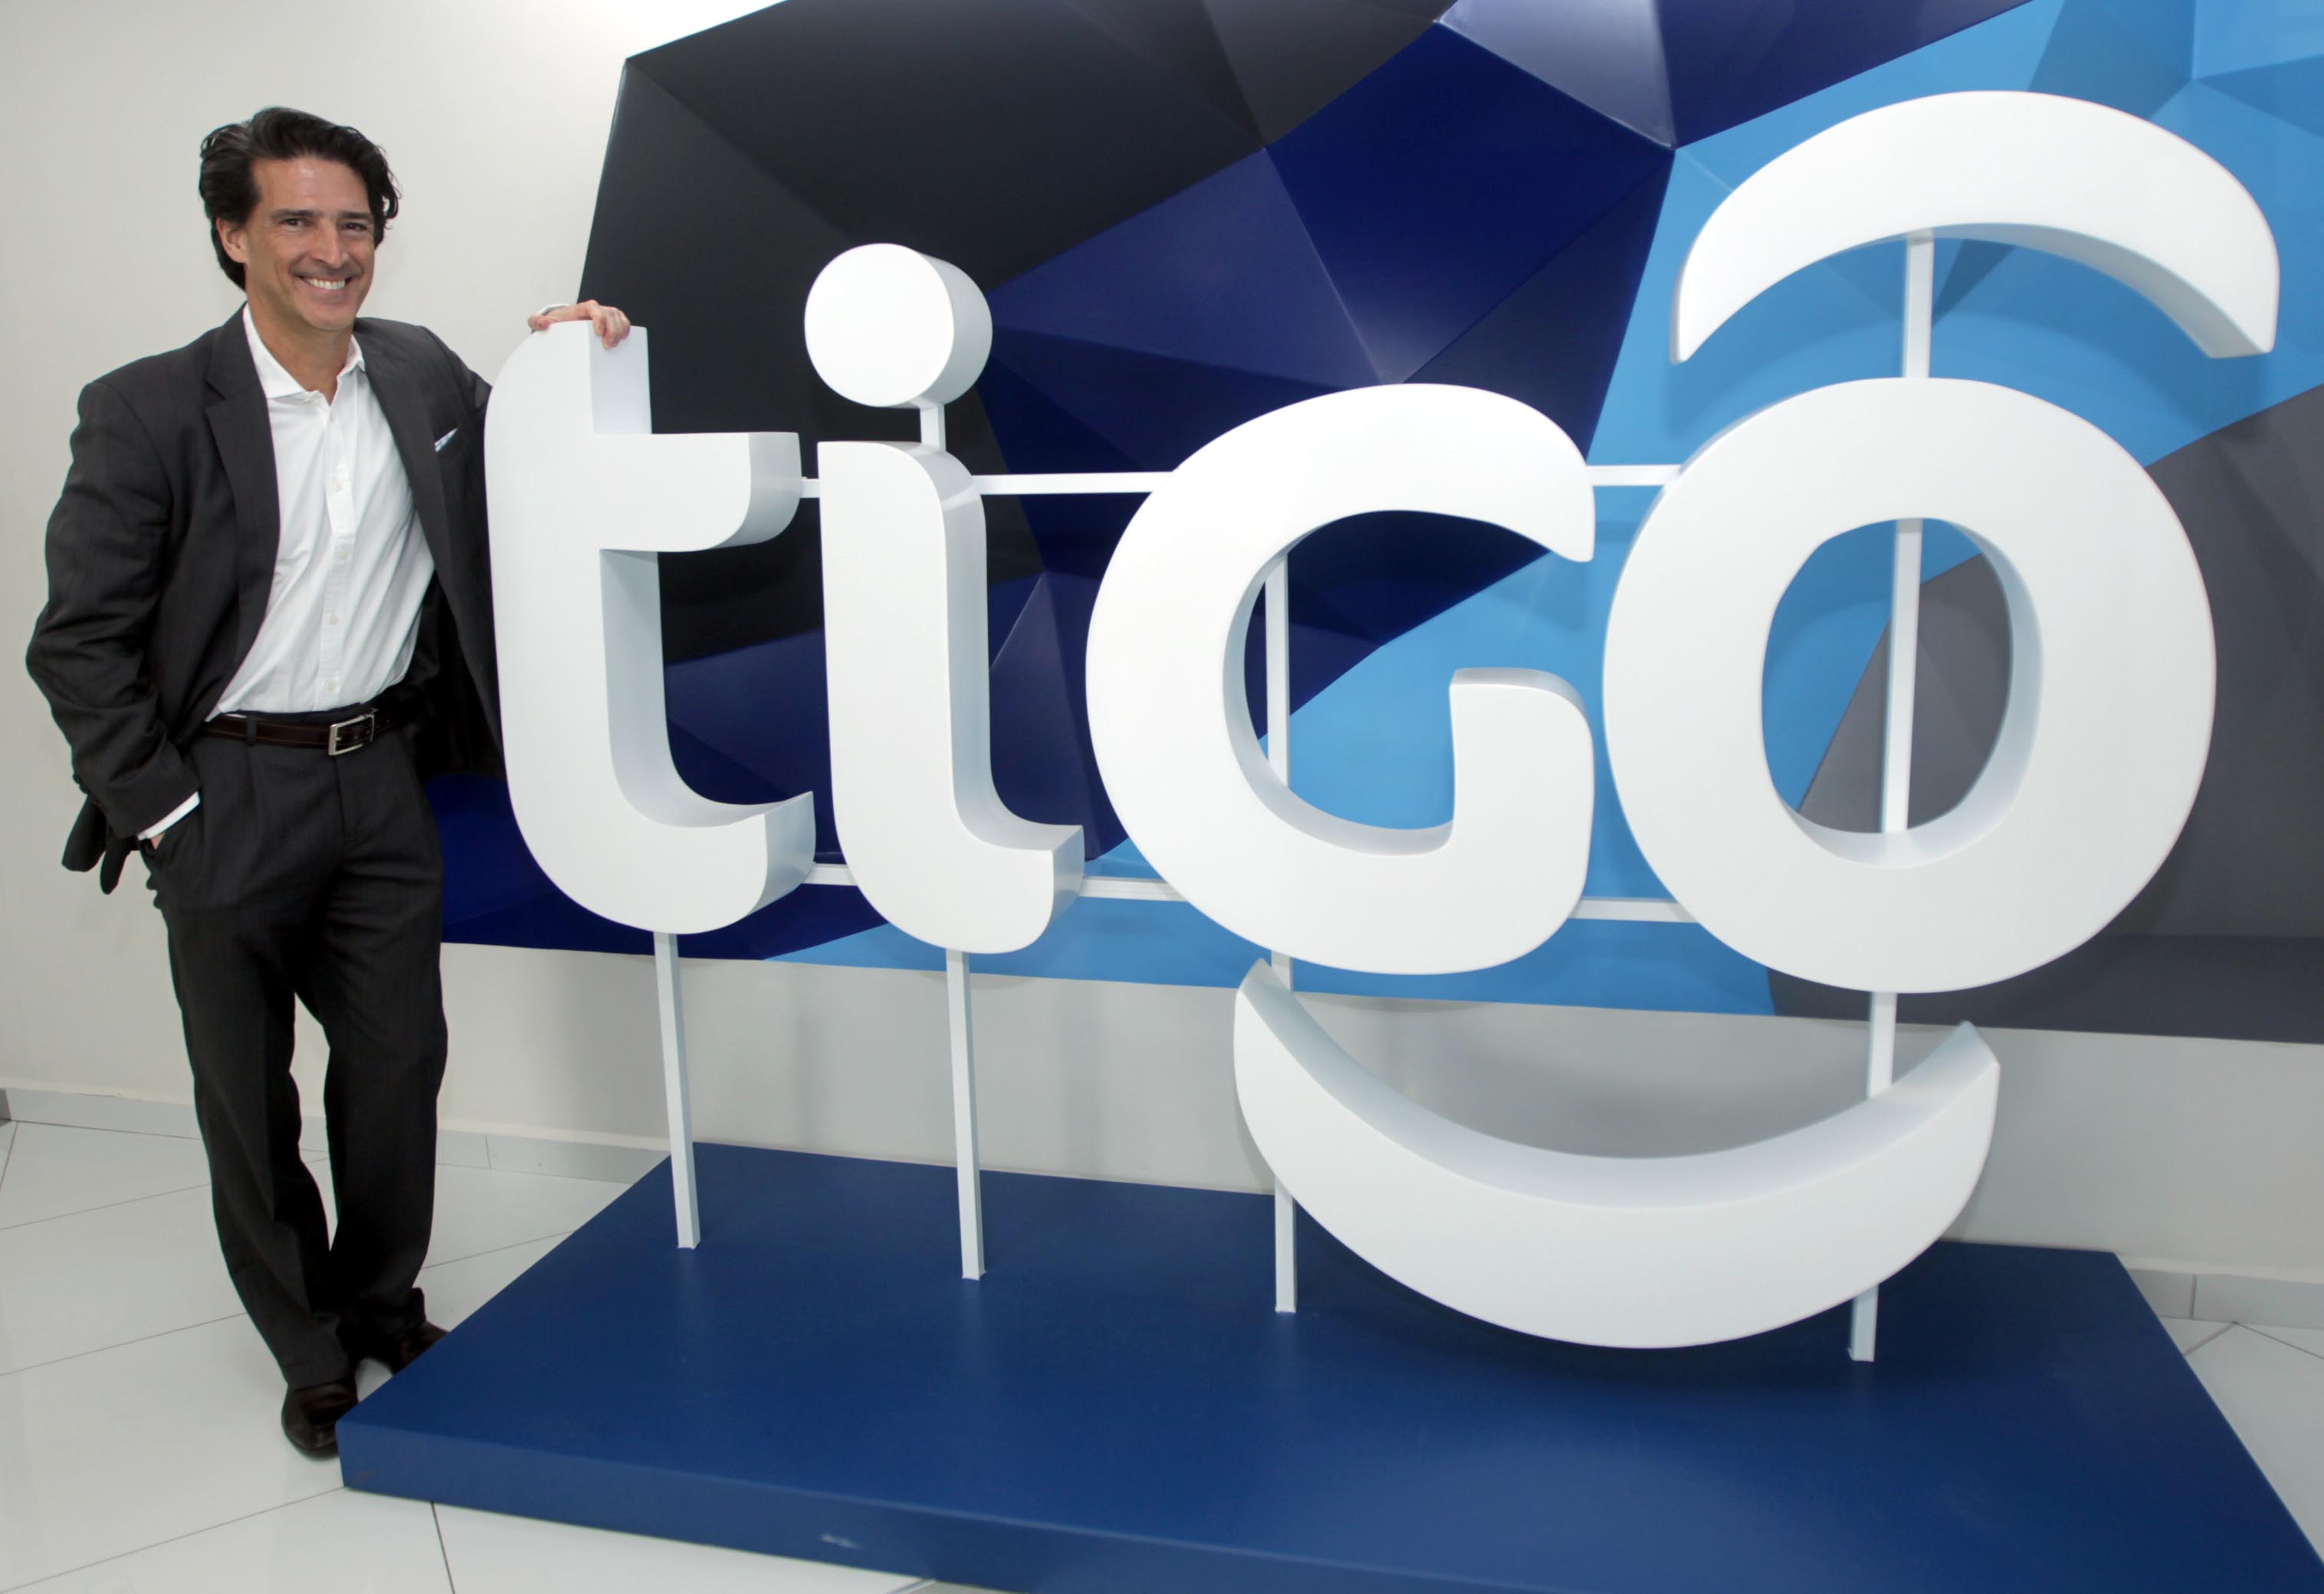 Millicom | Tigo - Leading the digital lifestyle